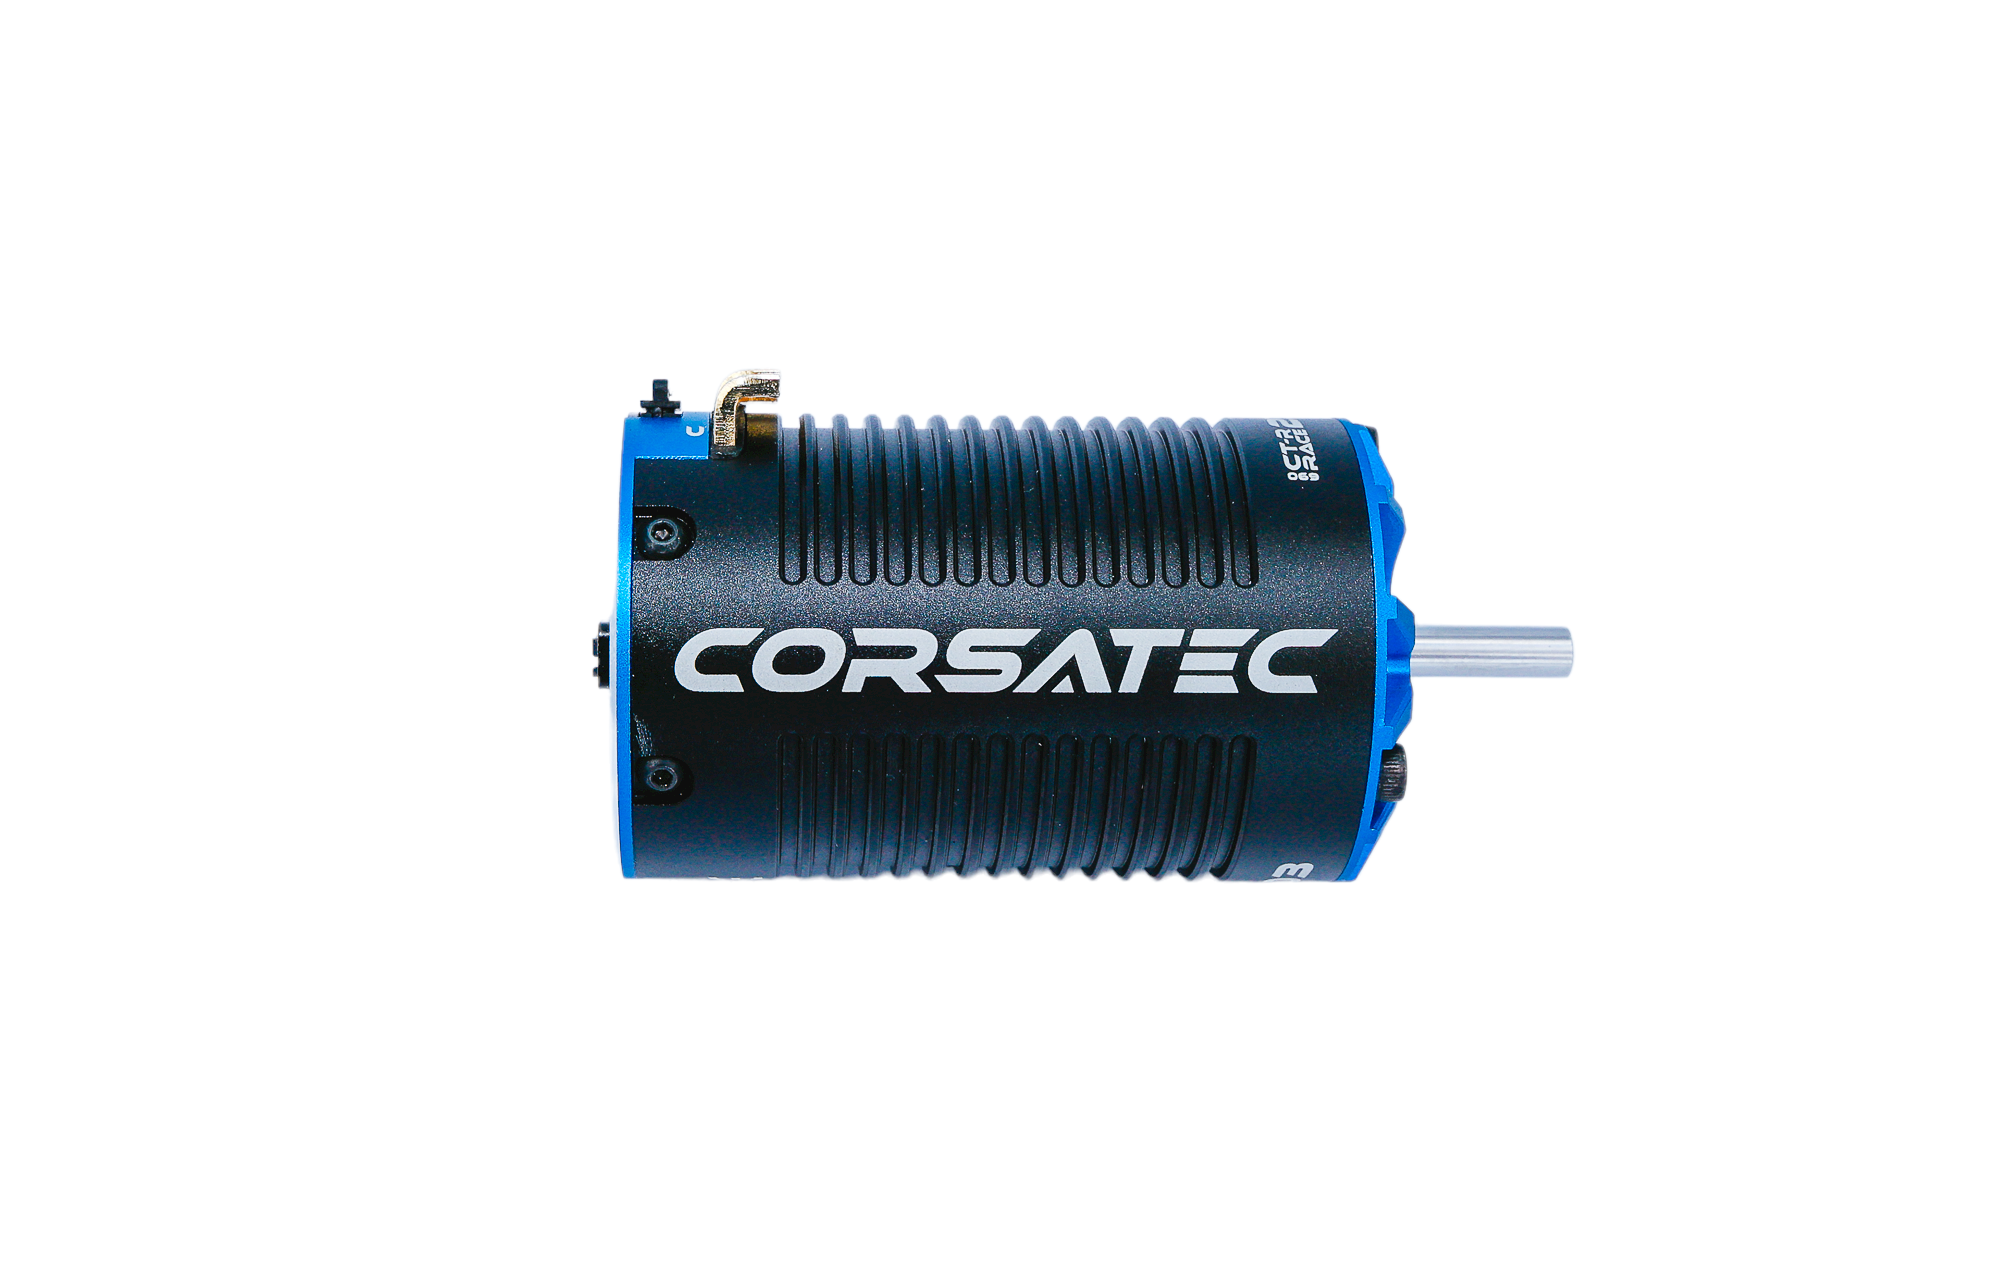 Corsatec Race Pro motor 2100kv